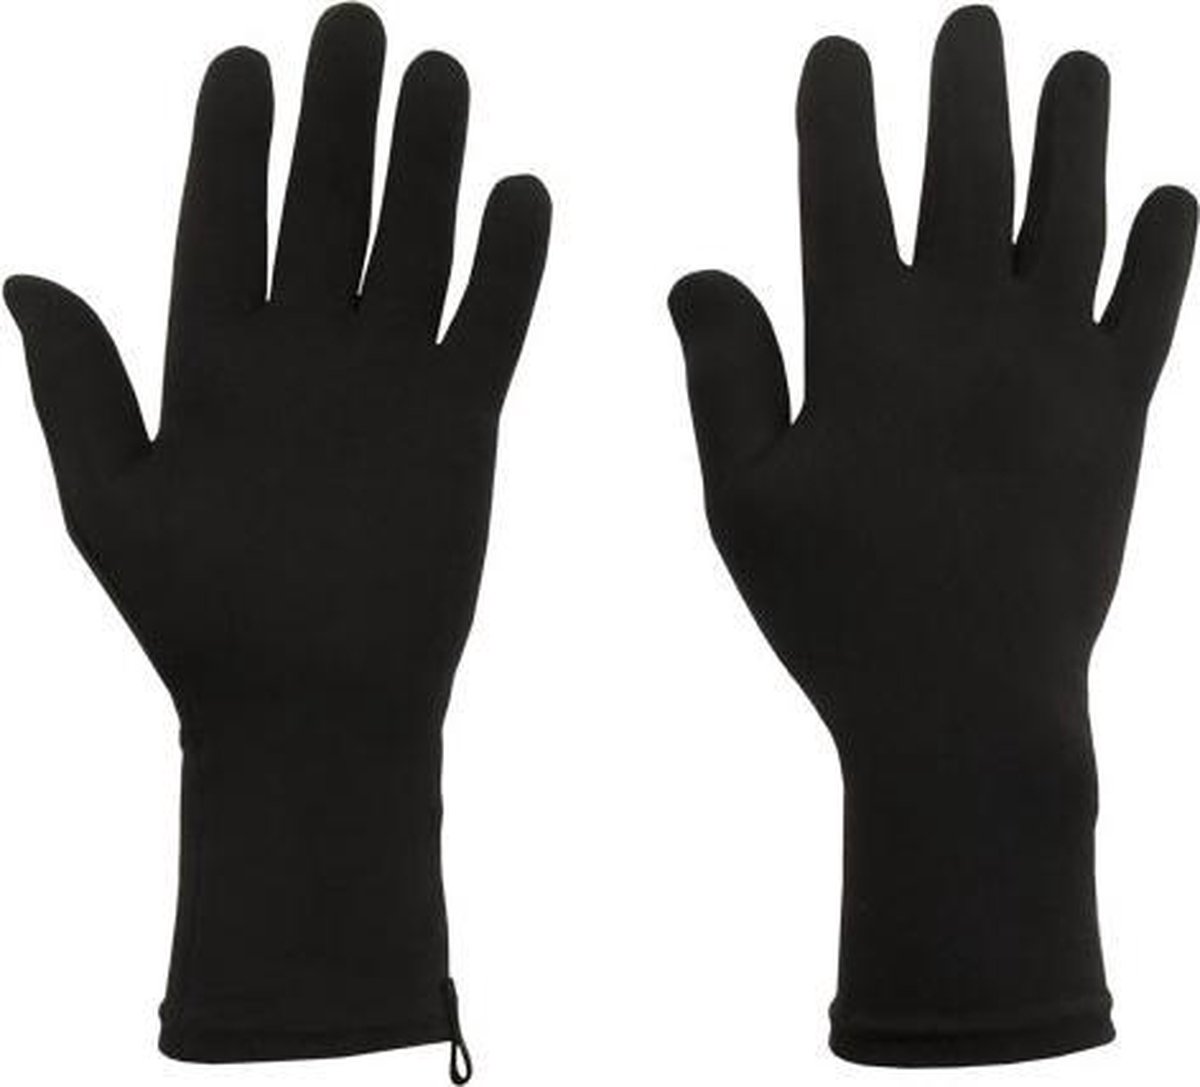 Protexgloves Original handschoenen zwart small - Tegen eczeem, zon gevoeligheid en andere chronische huid- en handaandoeningen